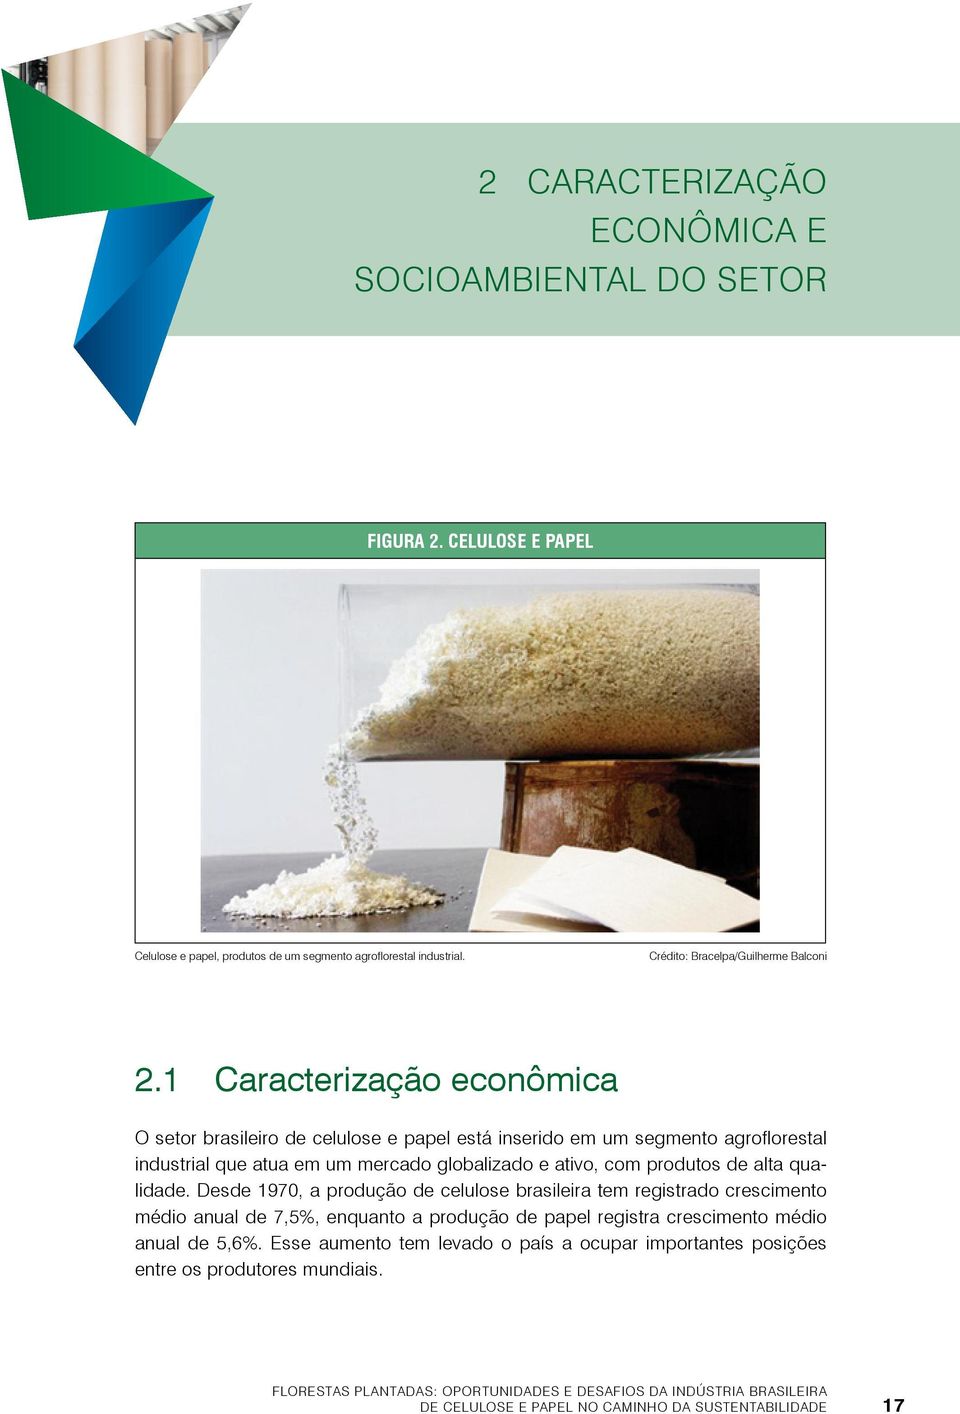 qualidade. Desde 1970, a produção de celulose brasileira tem registrado crescimento médio anual de 7,5%, enquanto a produção de papel registra crescimento médio anual de 5,6%.